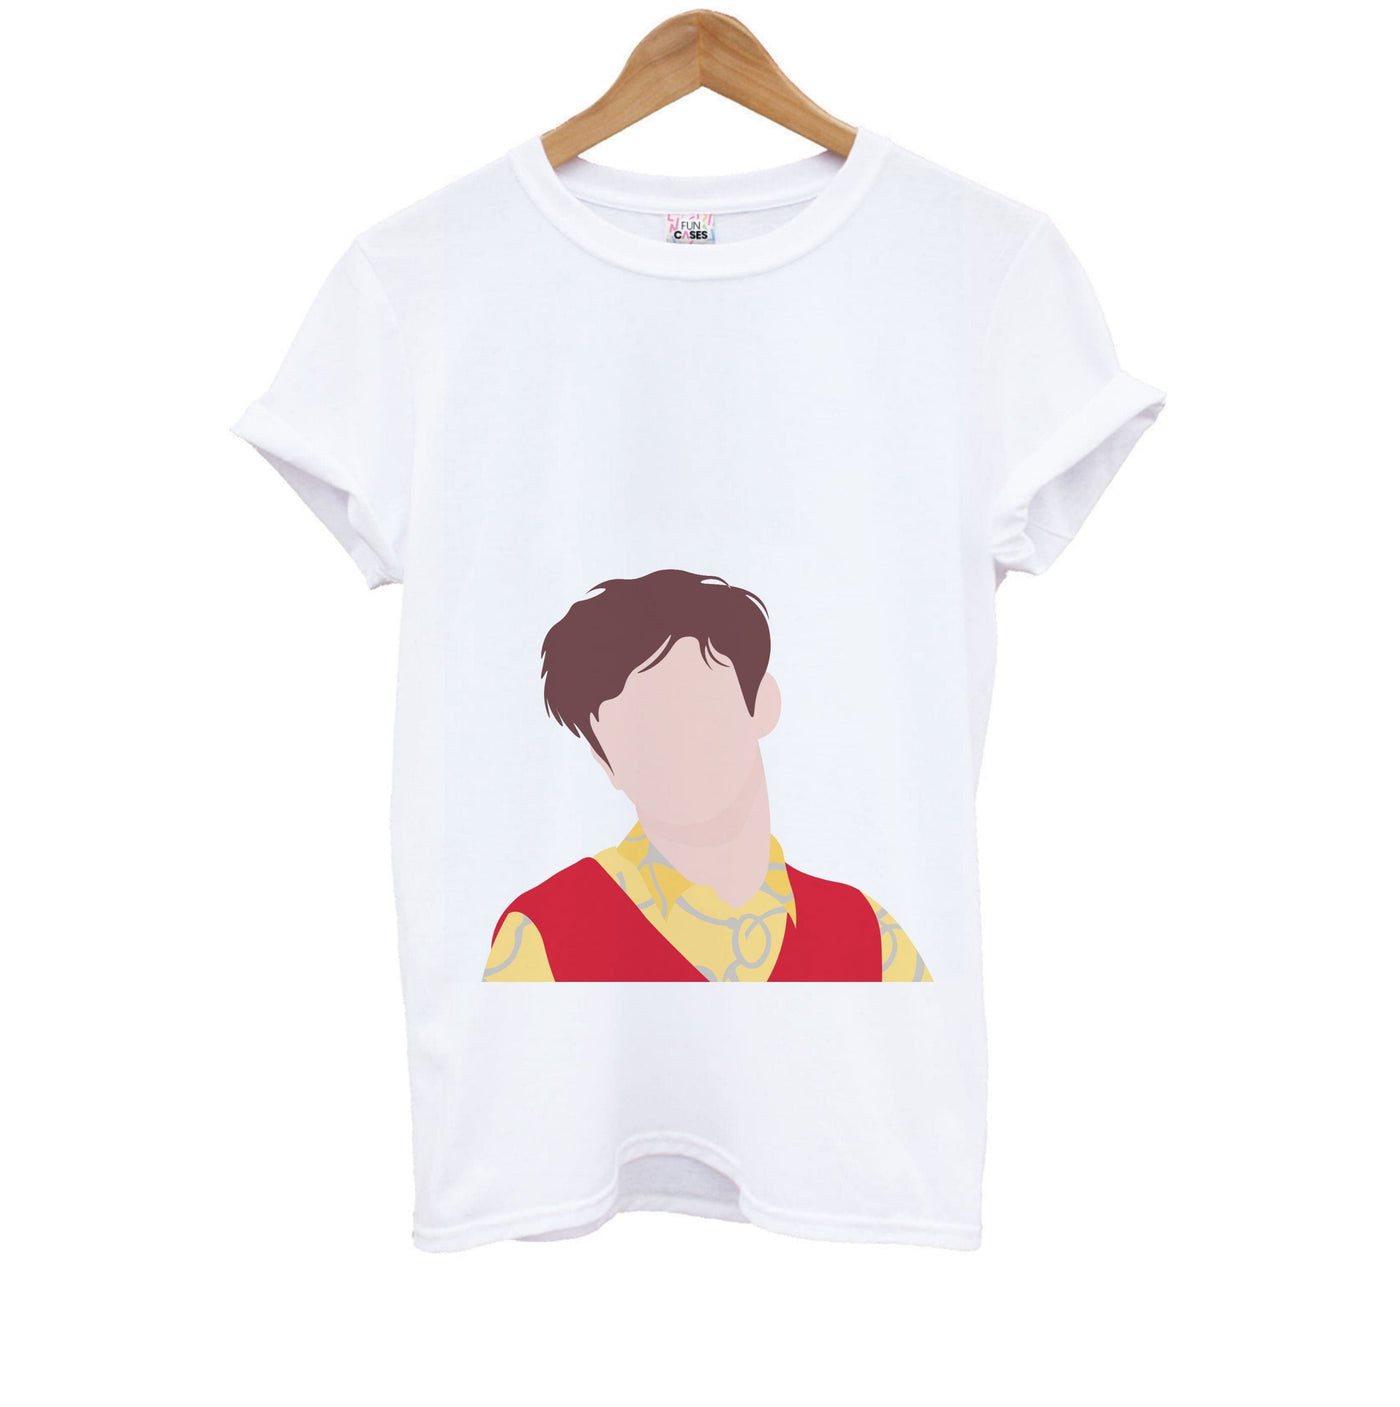 Pose - Declan Mckenna Kids T-Shirt